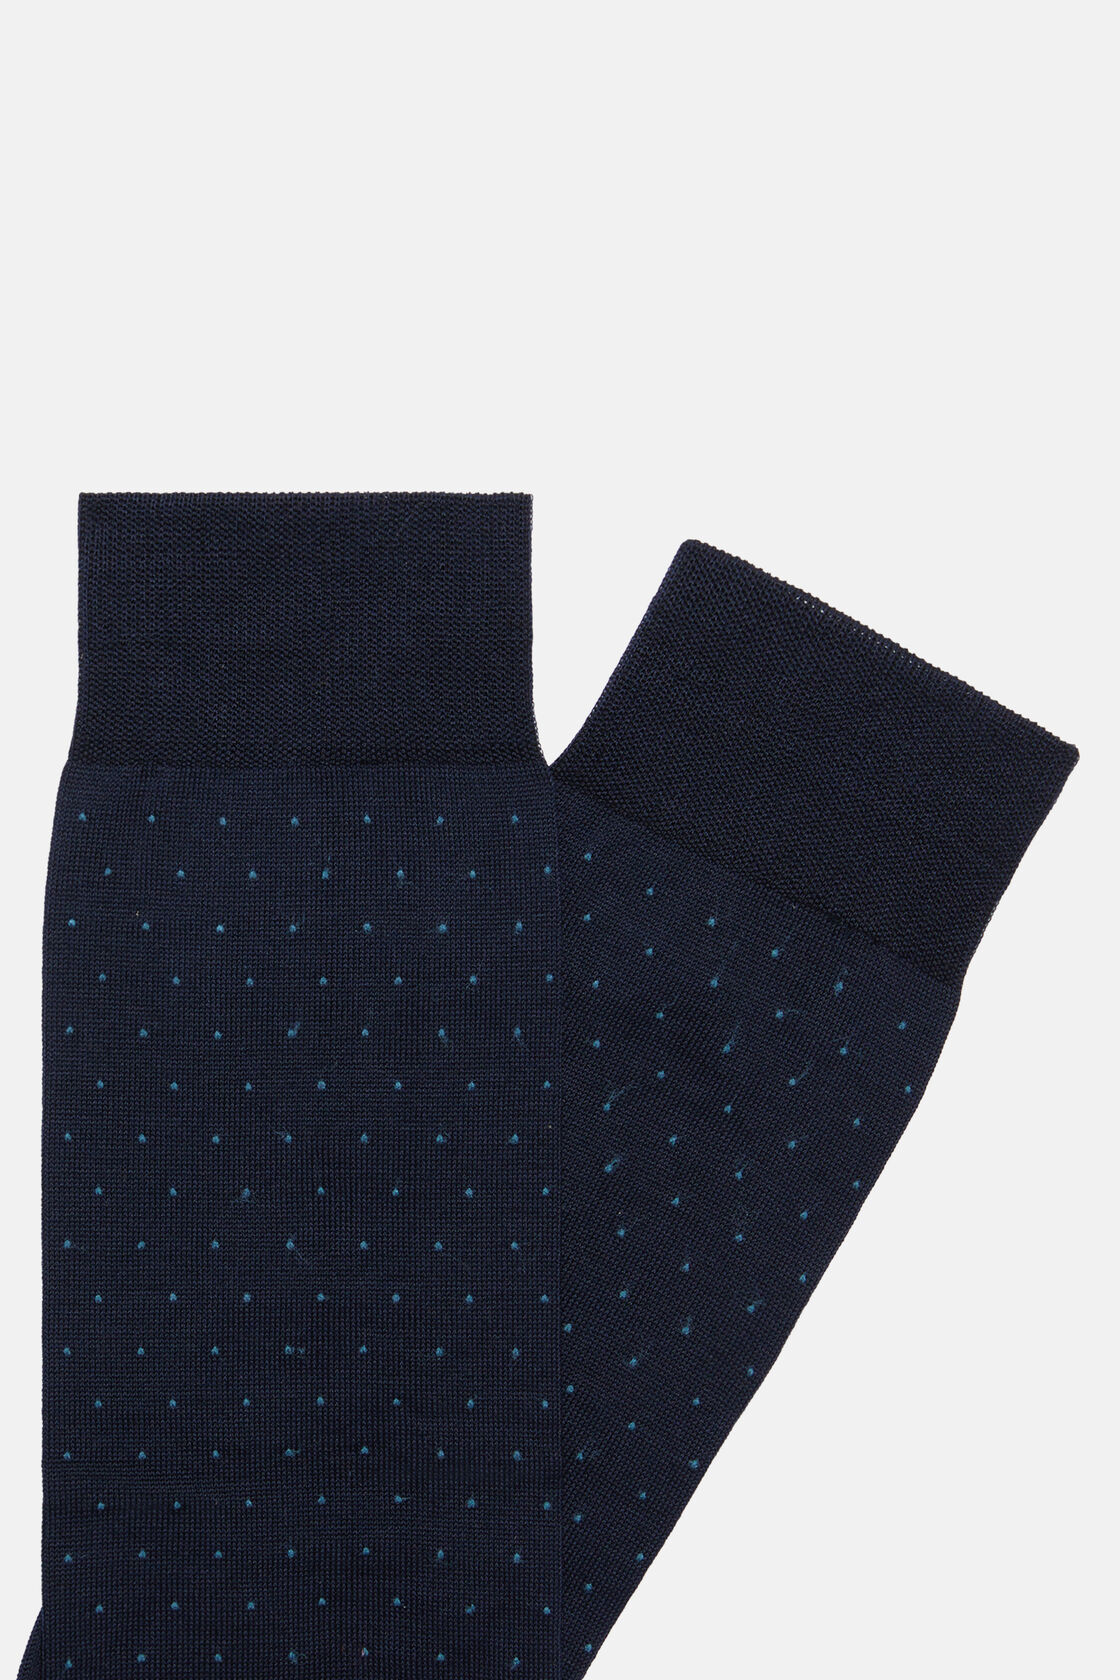 Pöttyös zokni pamutkeverékből, Navy blue, hi-res